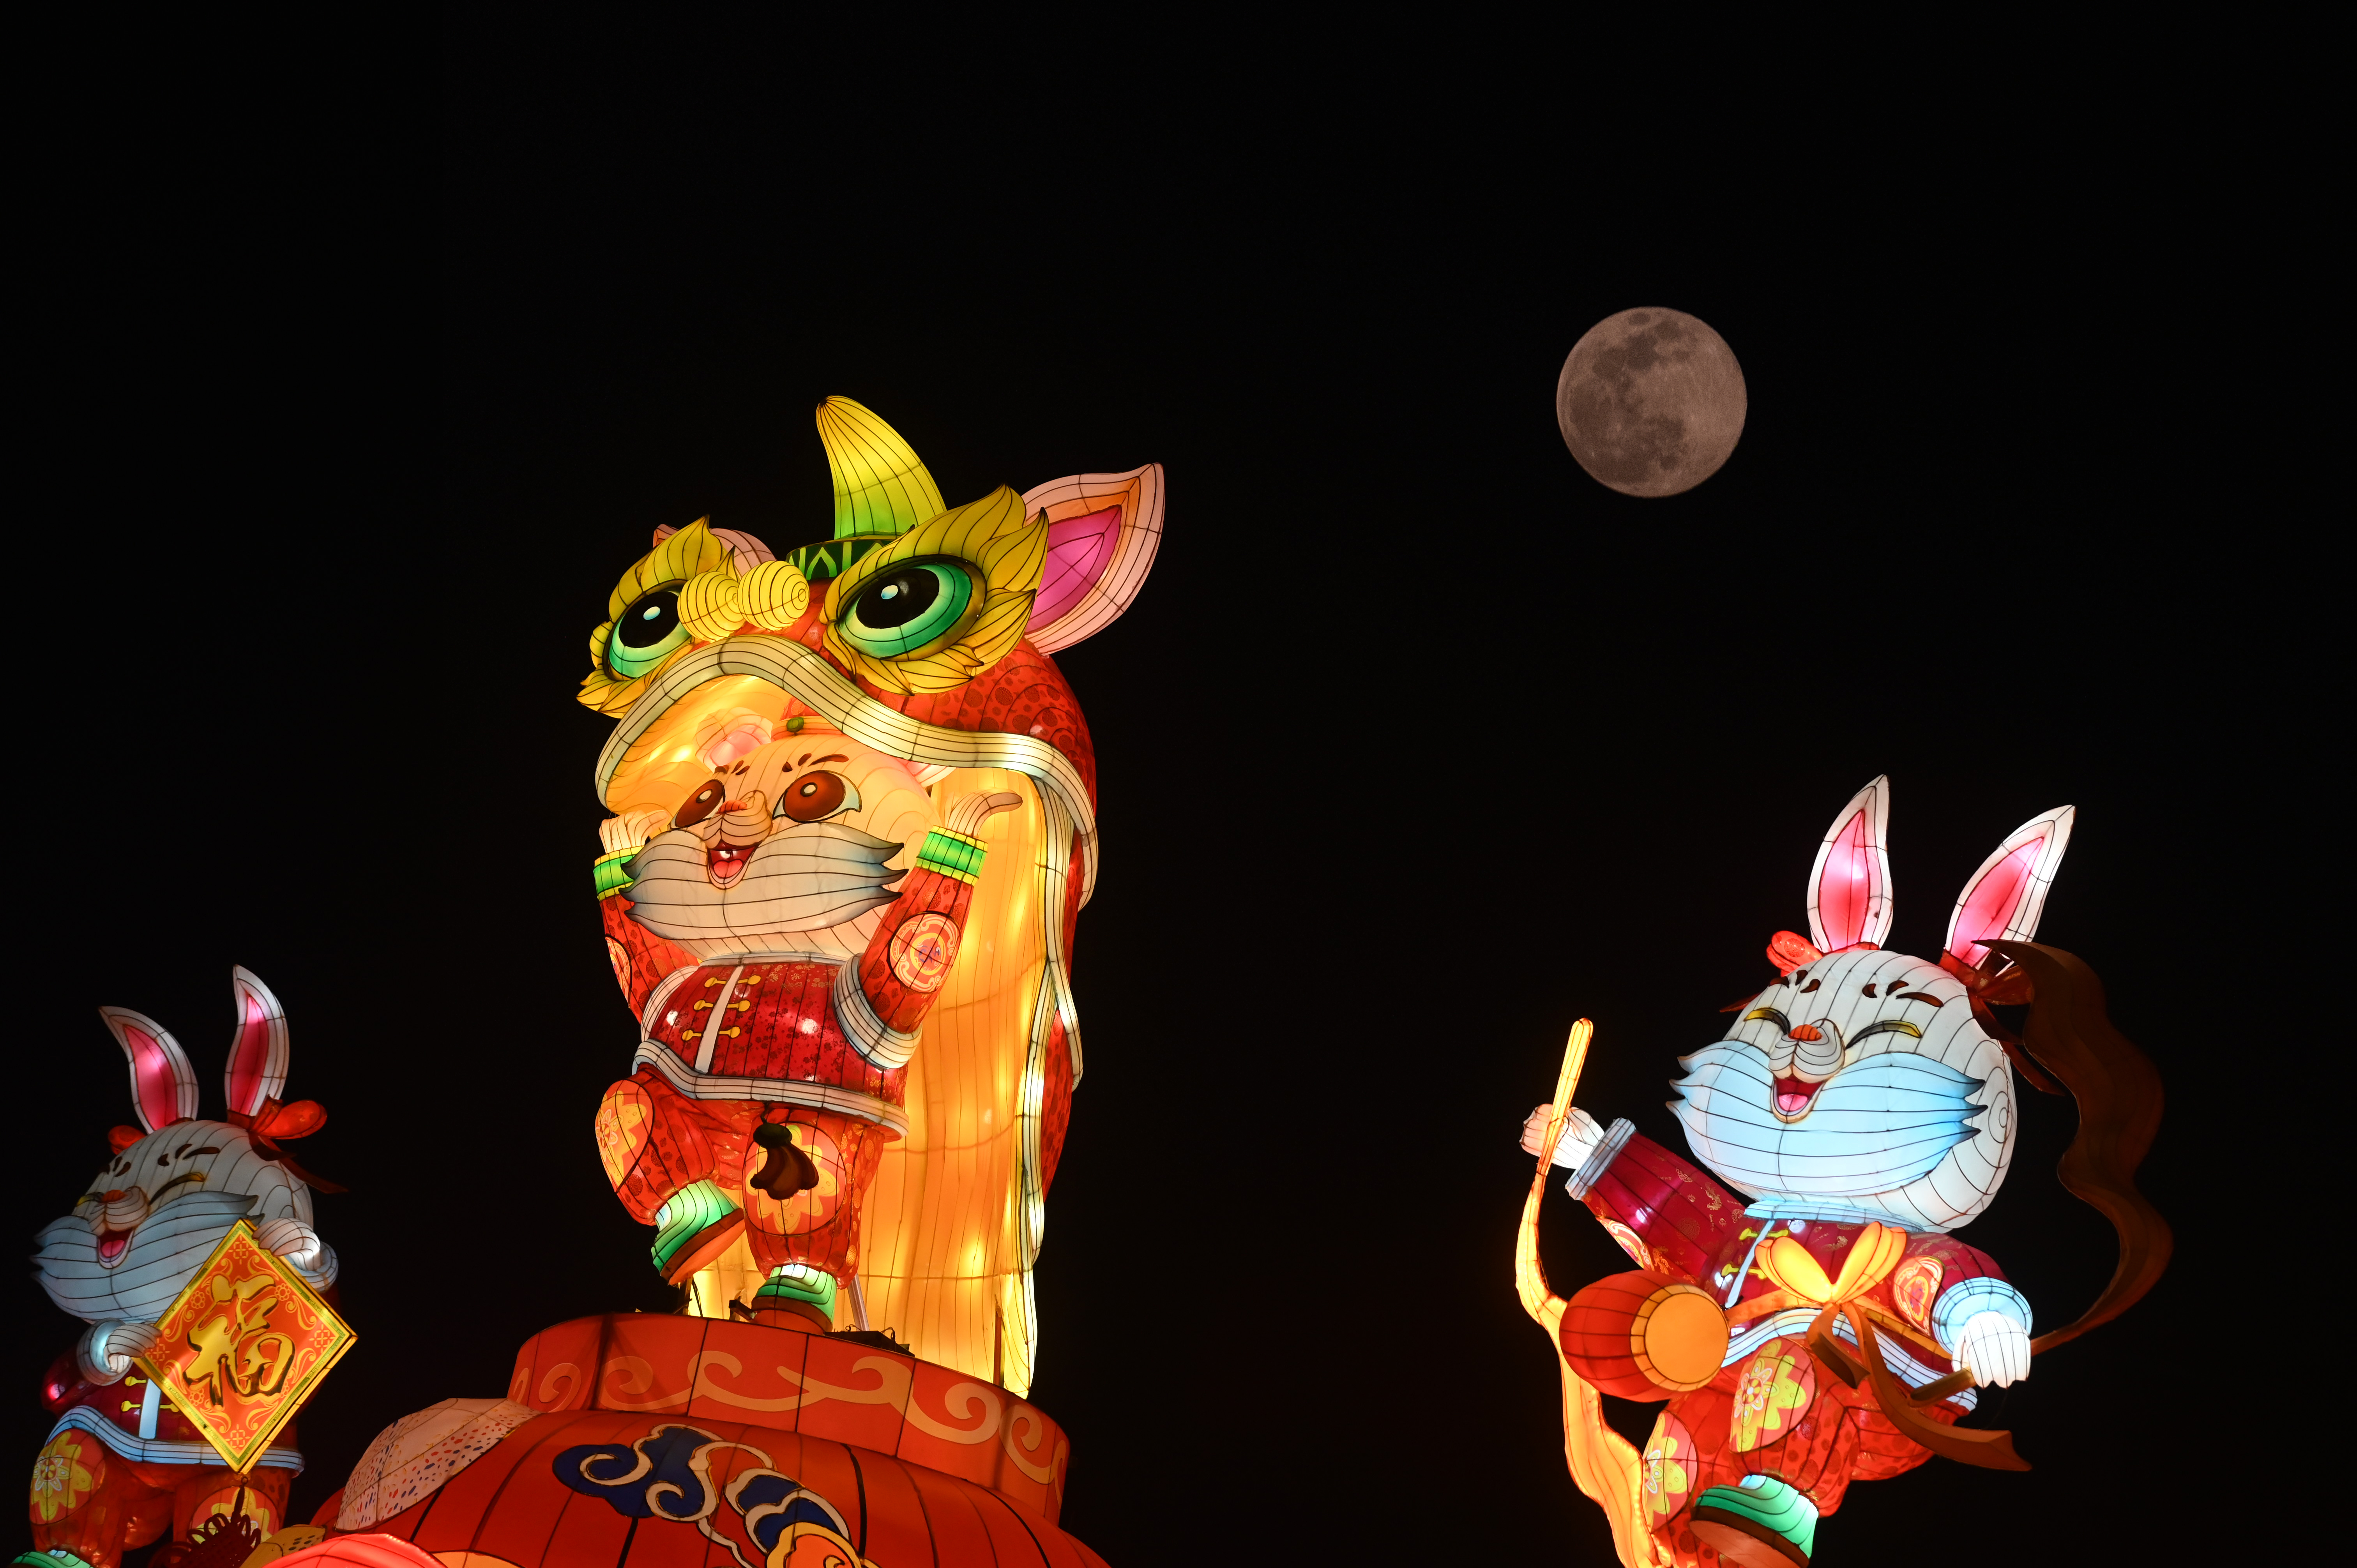 La luna llena se puede ver en el cielo nocturno detrás de tres linternas de colores con forma de animales sonrientes.